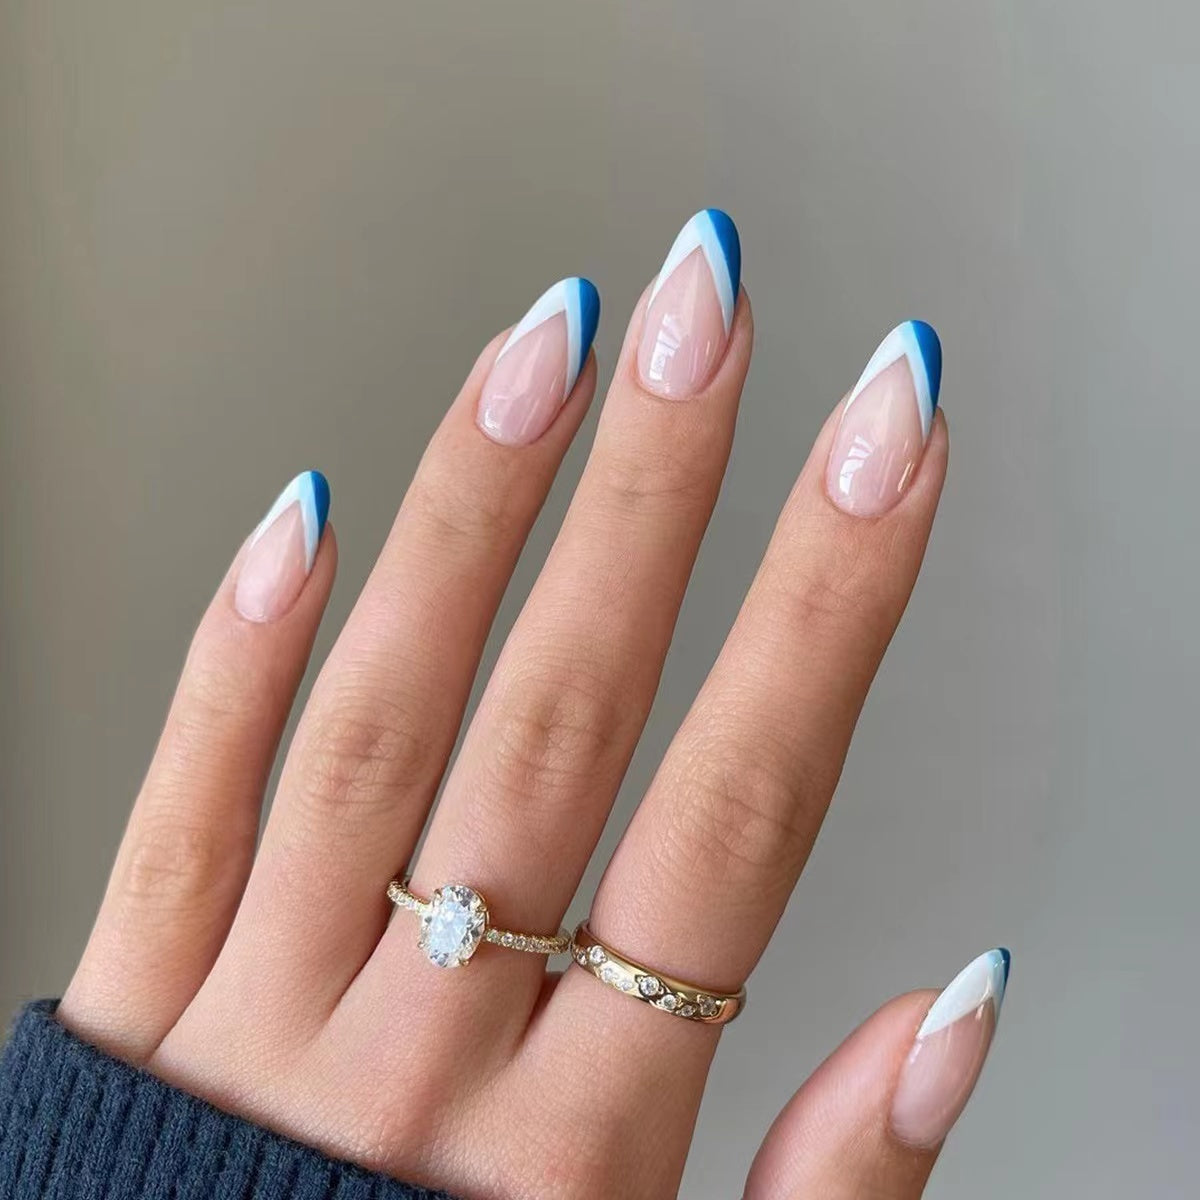 24pcs simple blue&white false nails -JP1412